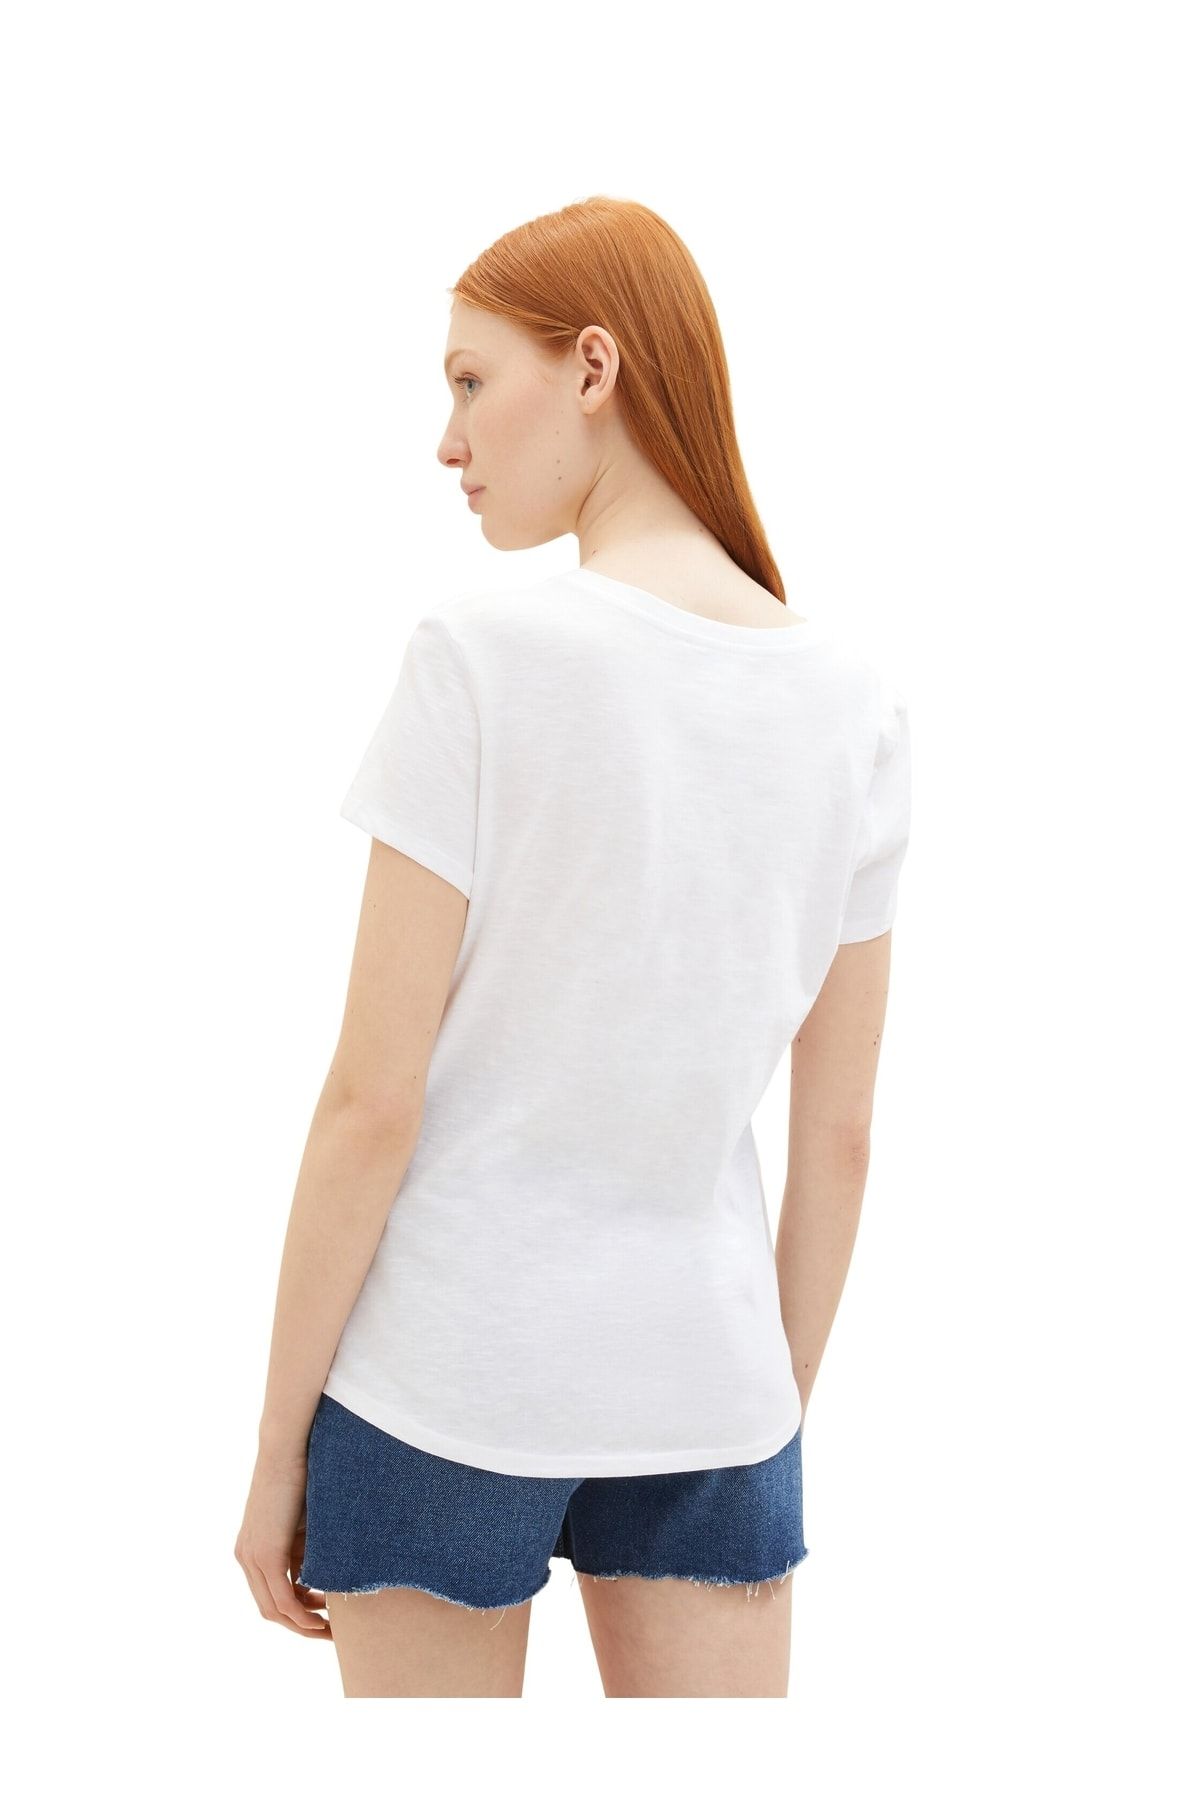 T-Shirt fit - Tom - Trendyol - White Tailor Denim Regular